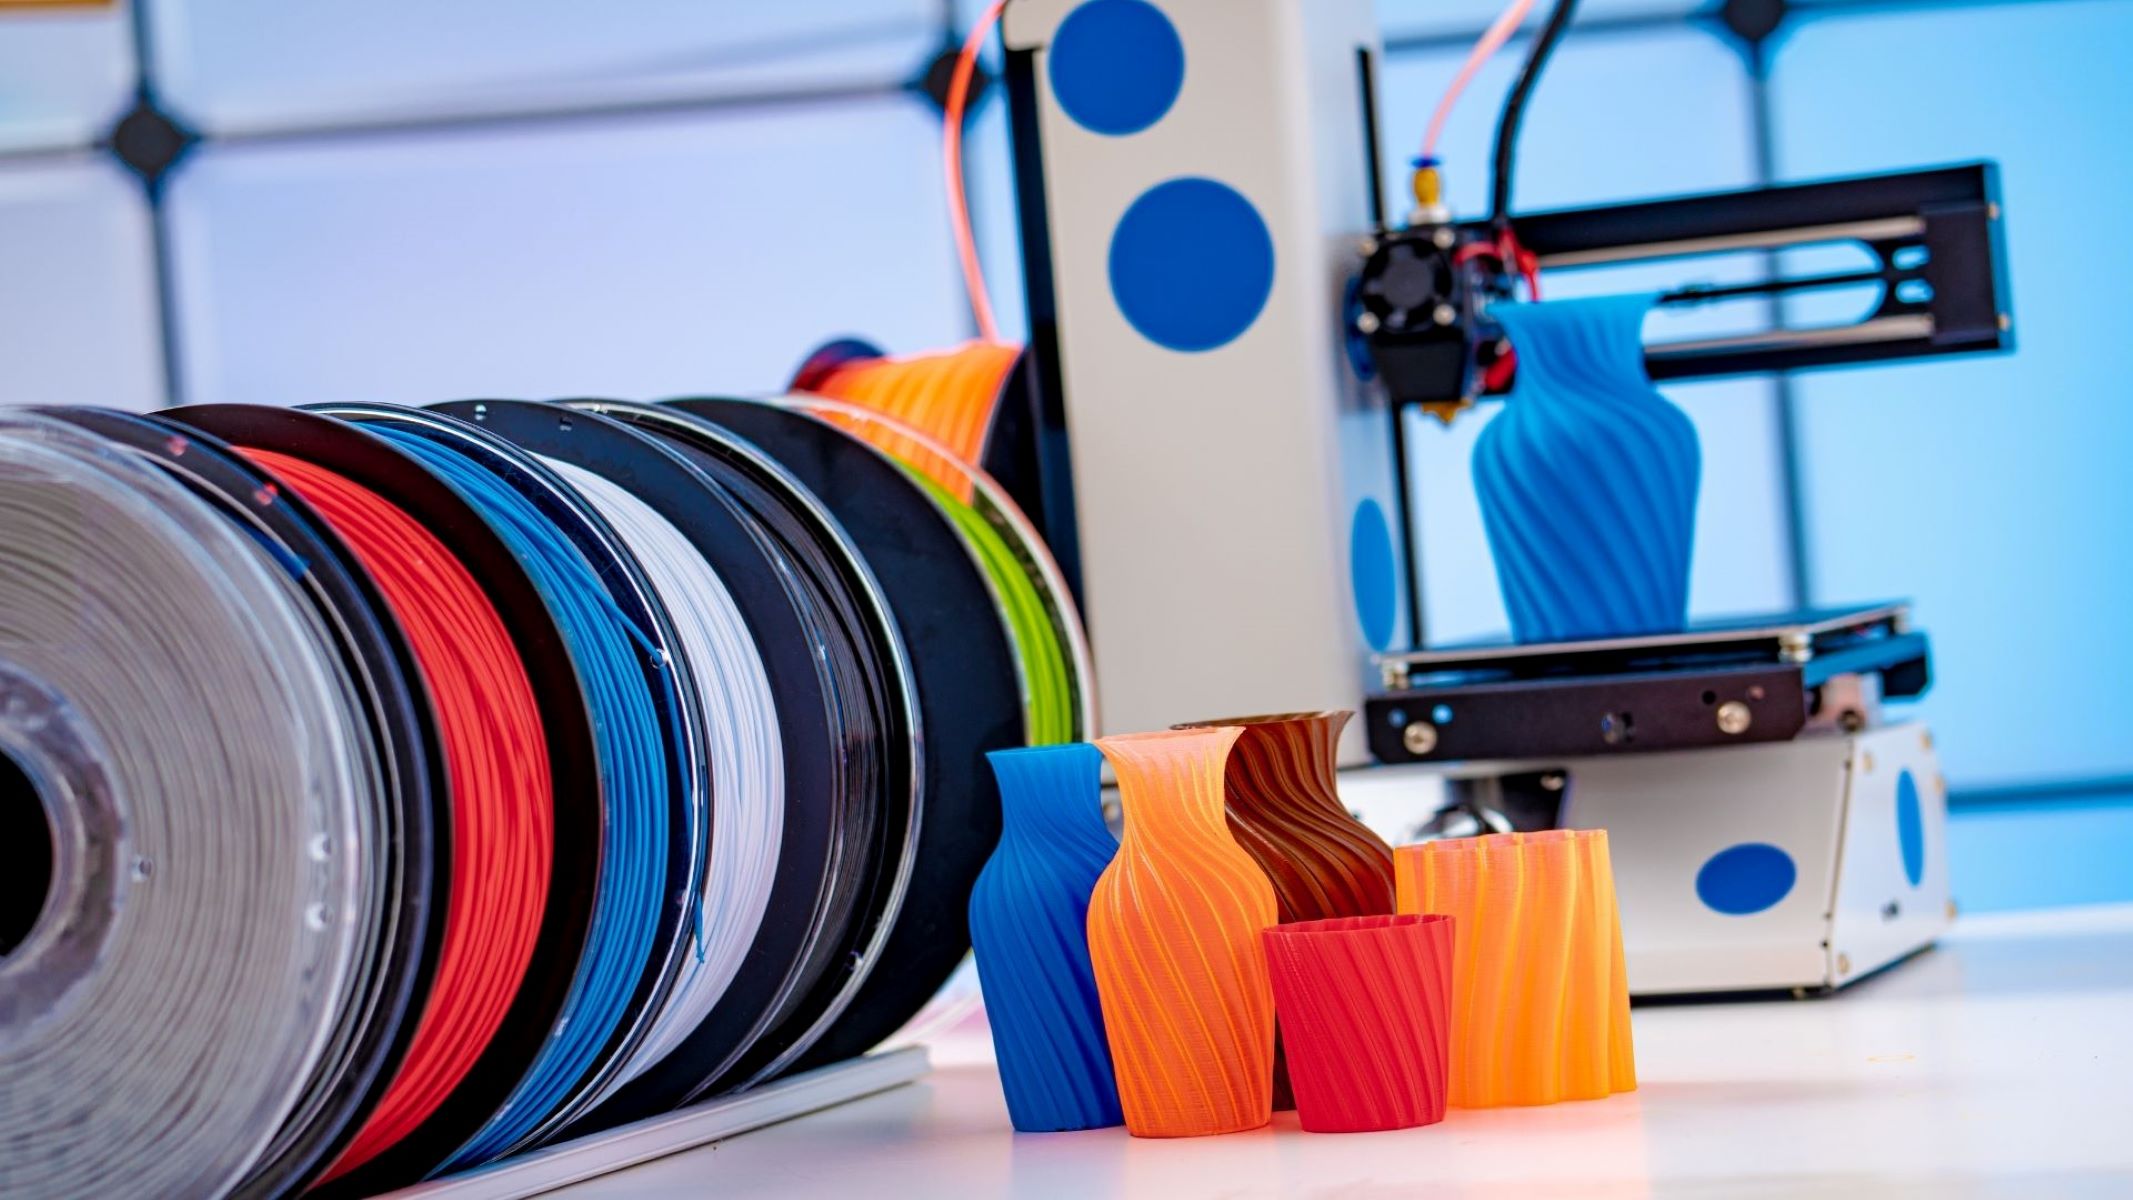 How To Make 3D Printer Filament